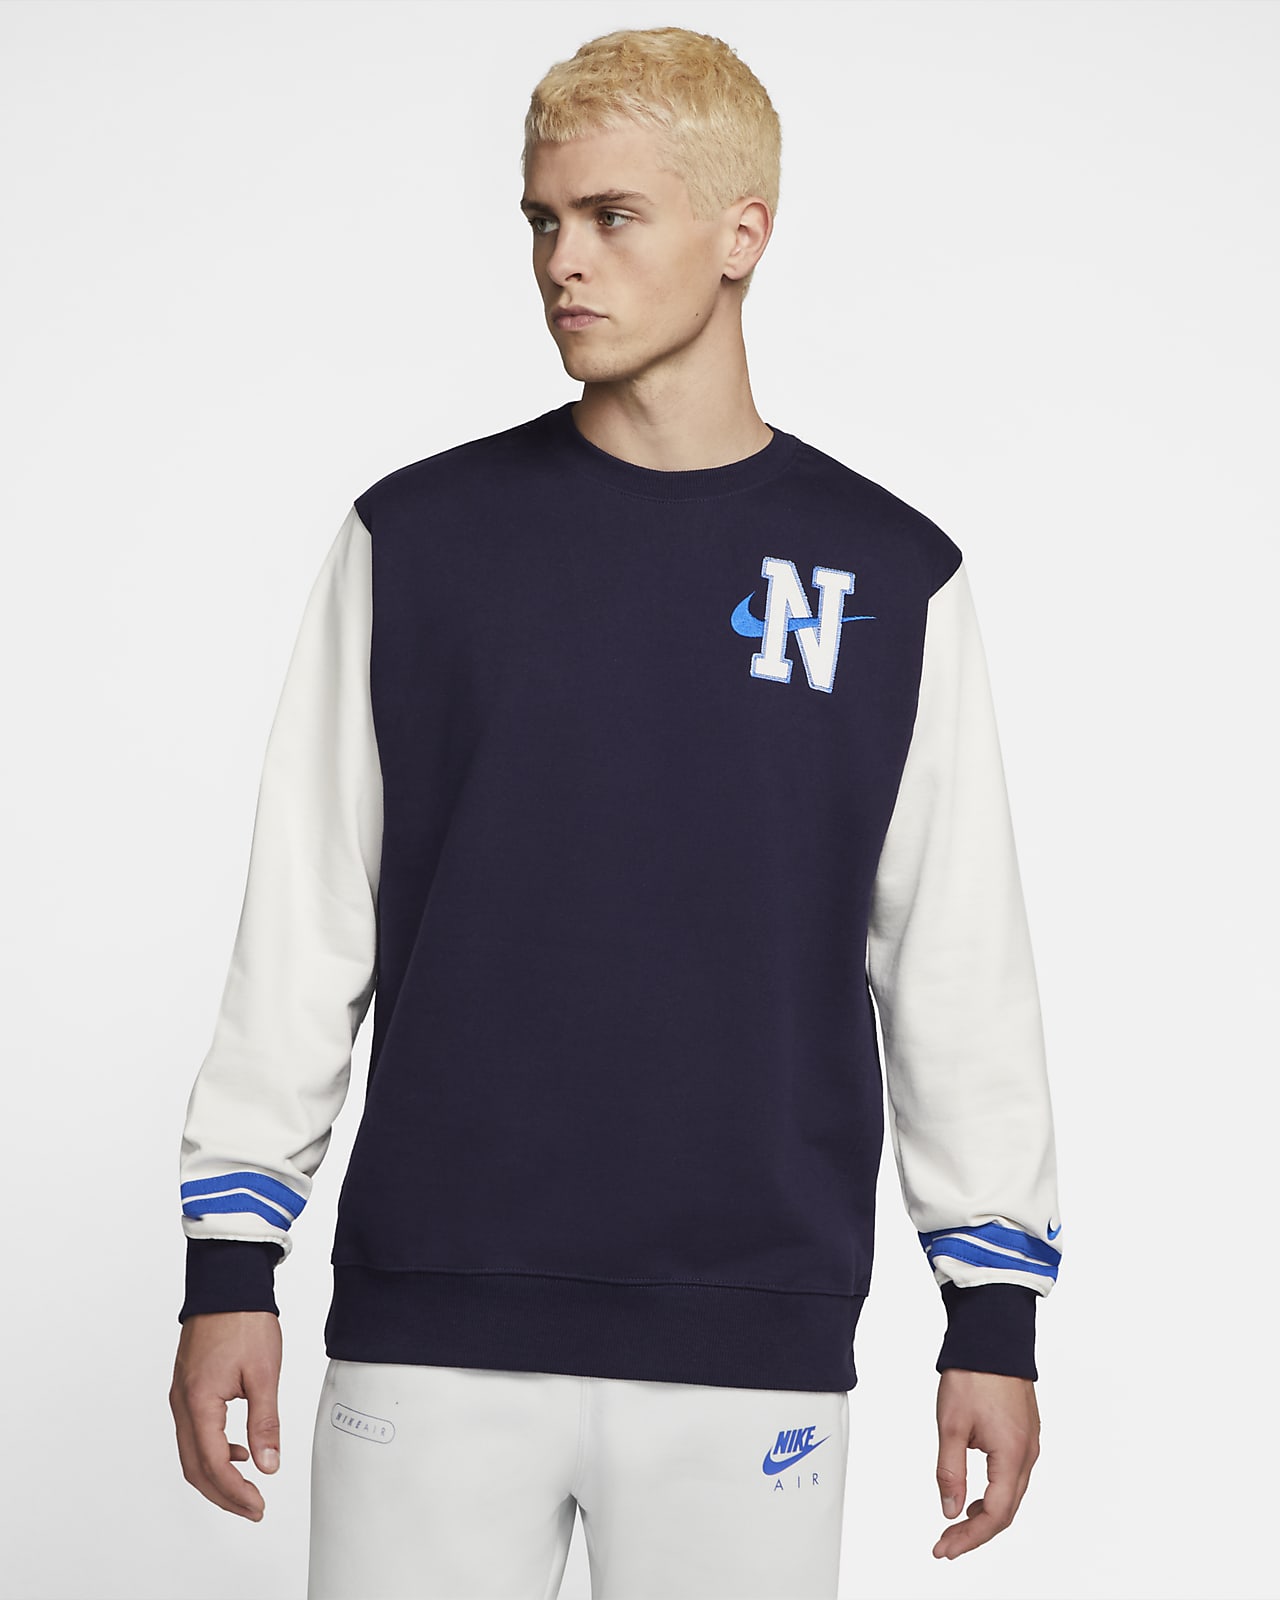 Nike Sportswear Retro Men's Fleece Sweatshirt. Nike GB